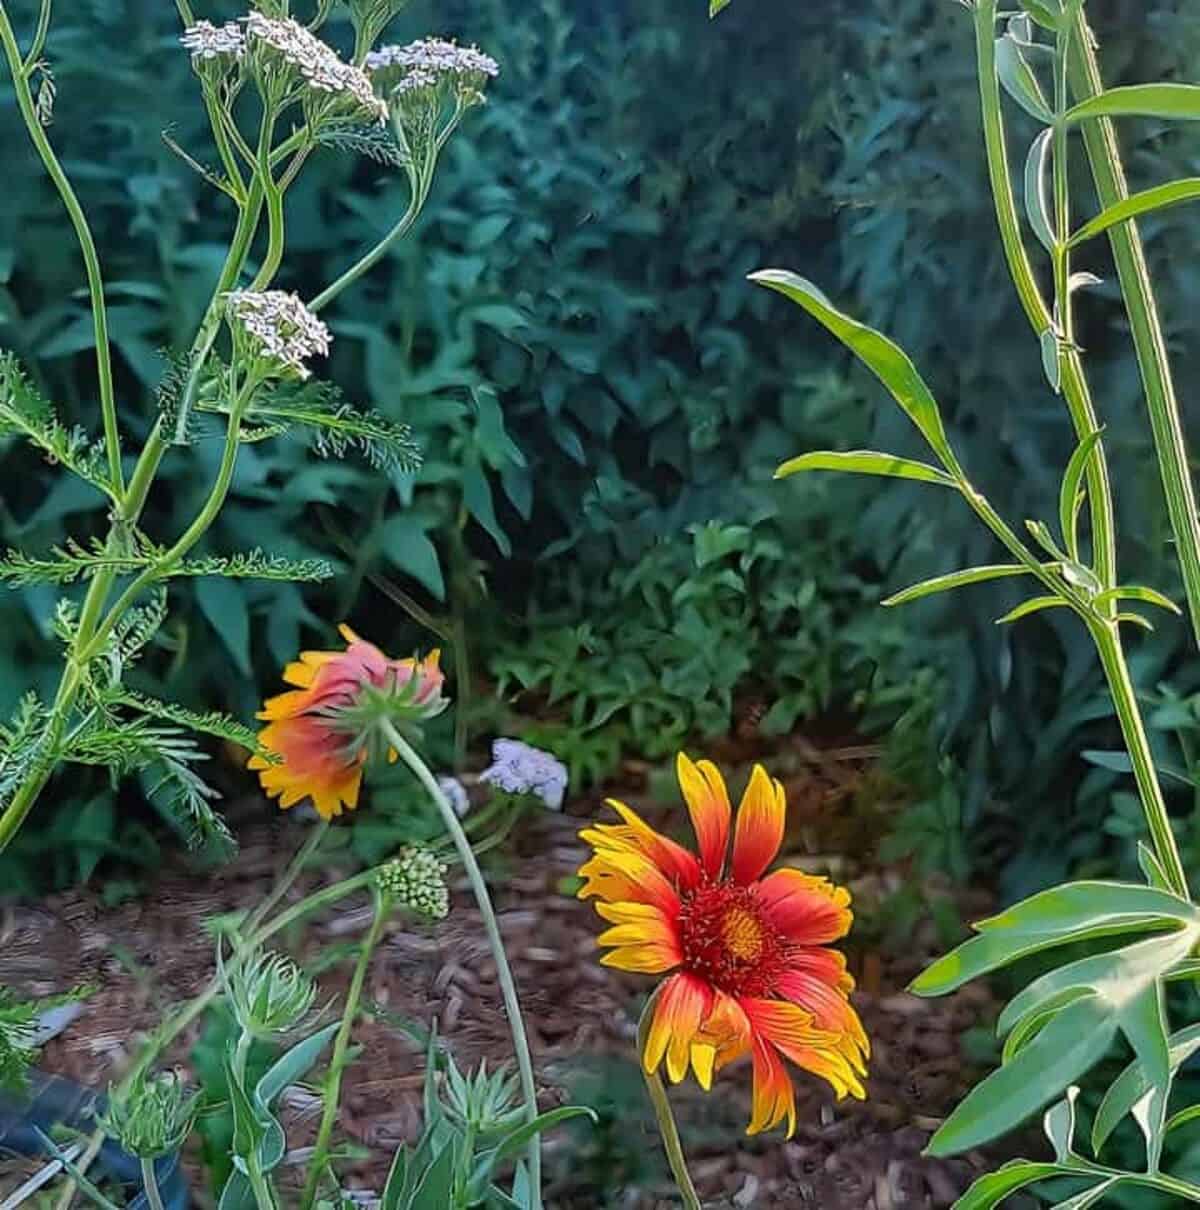 wildflowers growing in garden